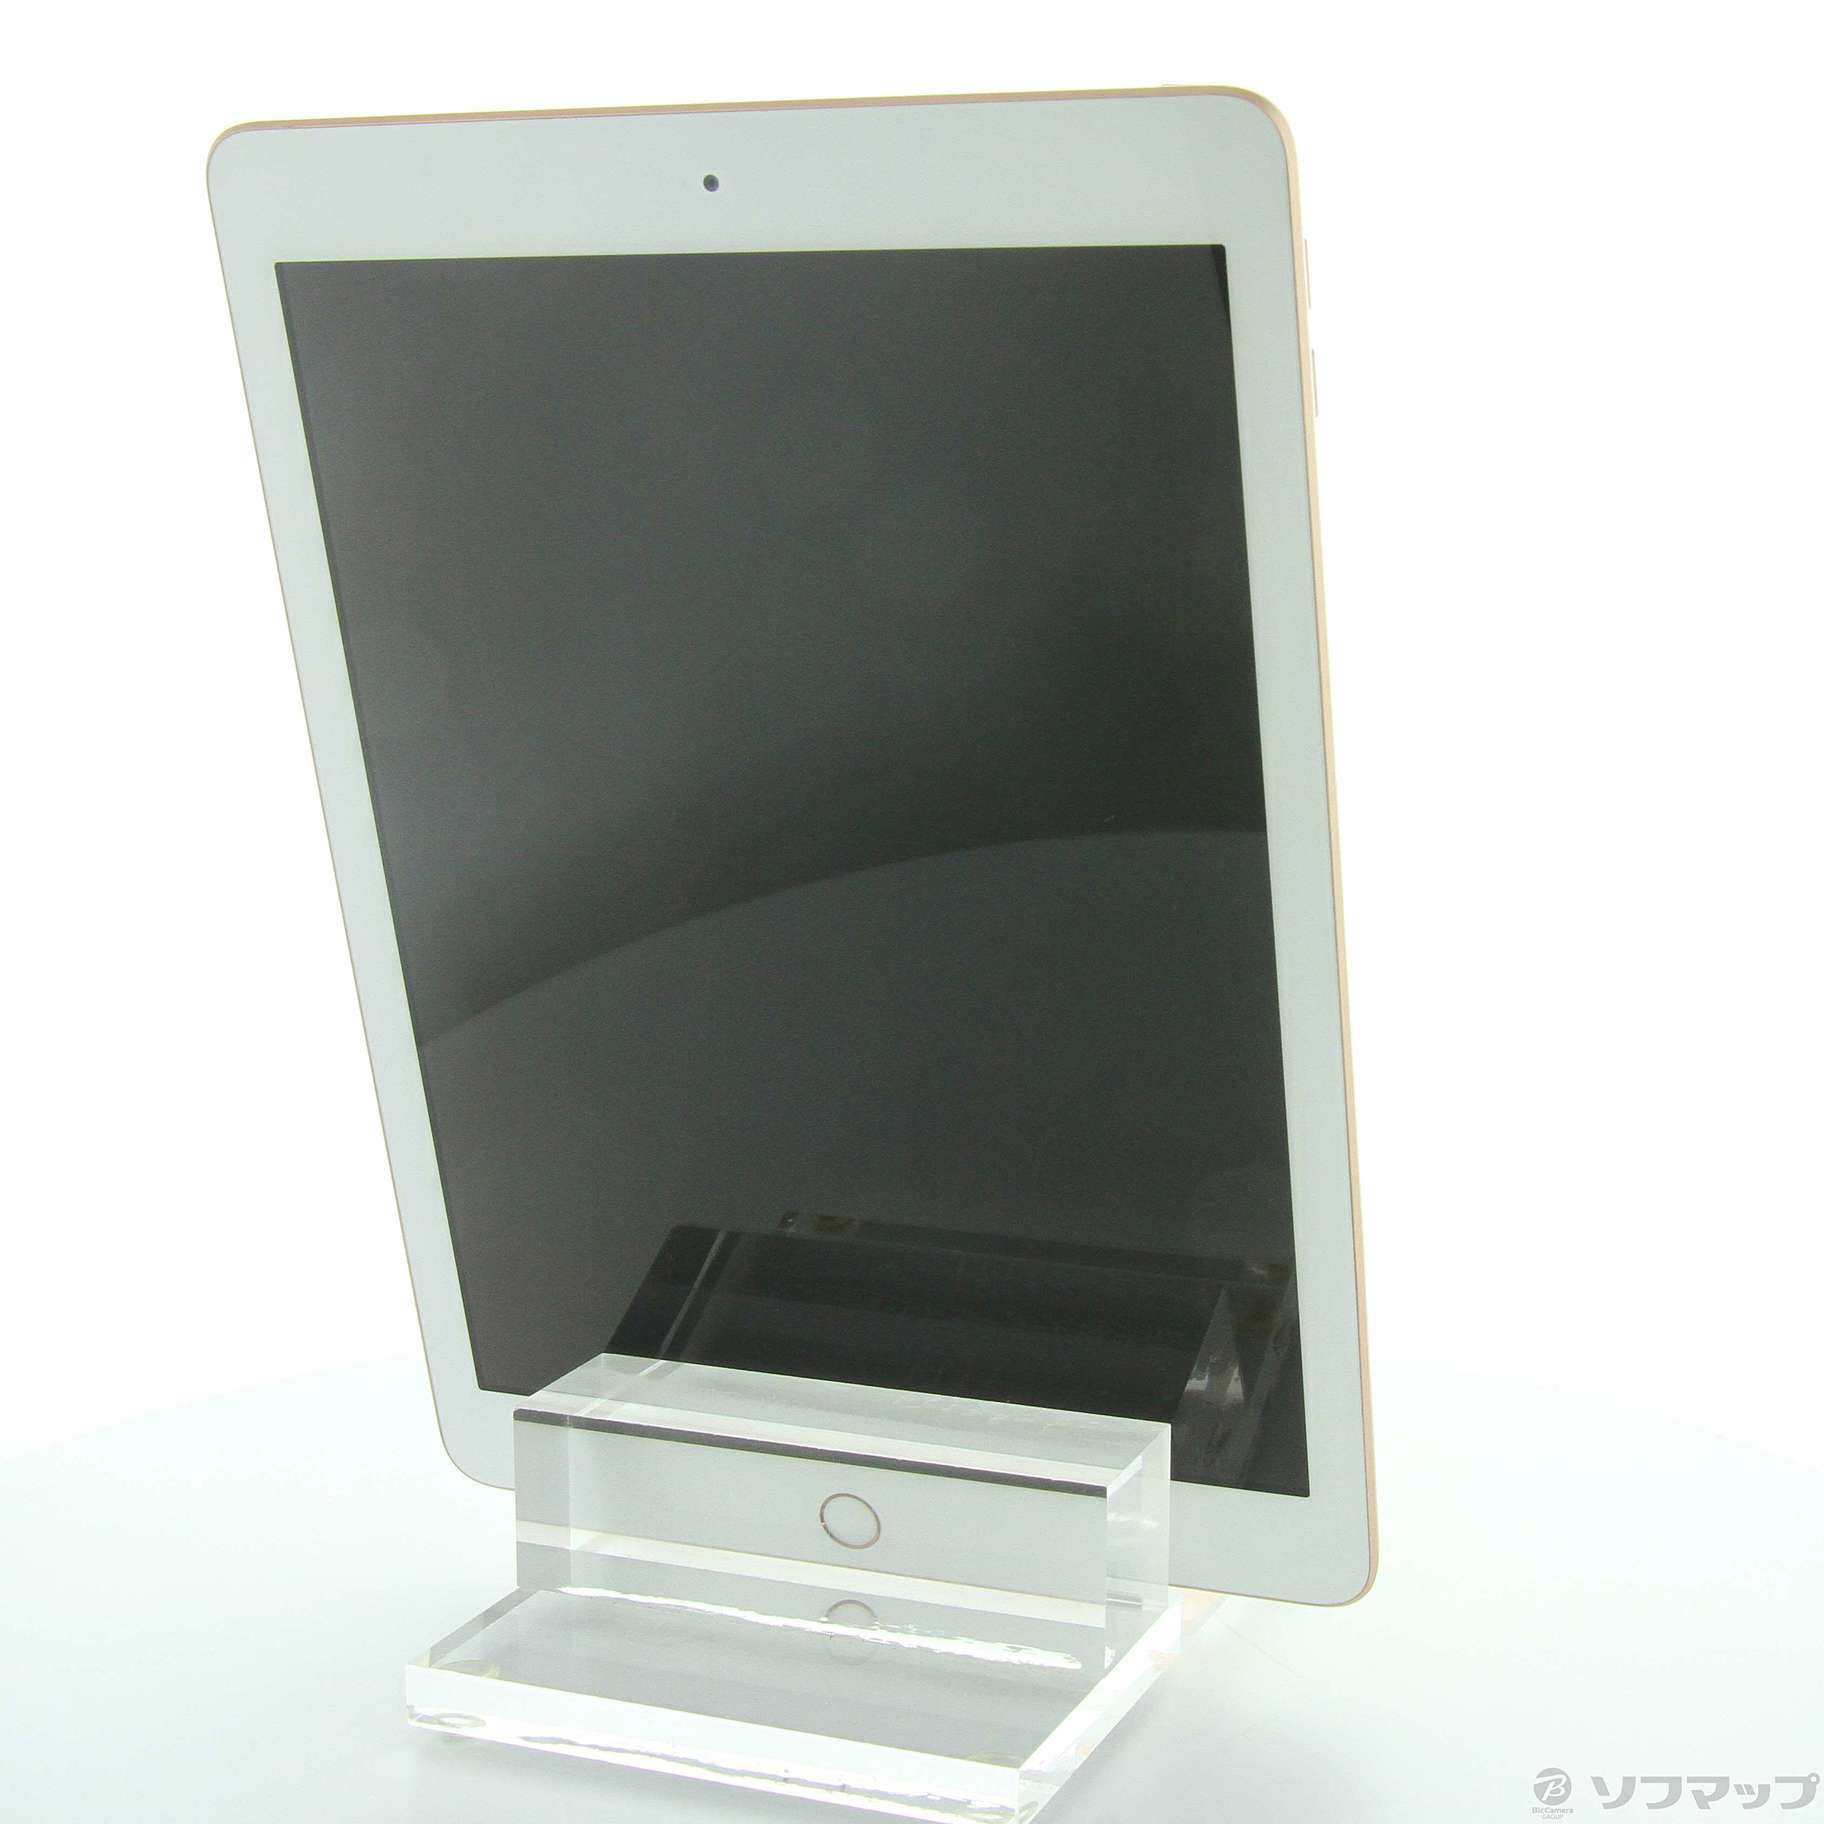 iPad 第6世代 32GB ゴールド MRJN2LL／A Wi-Fi